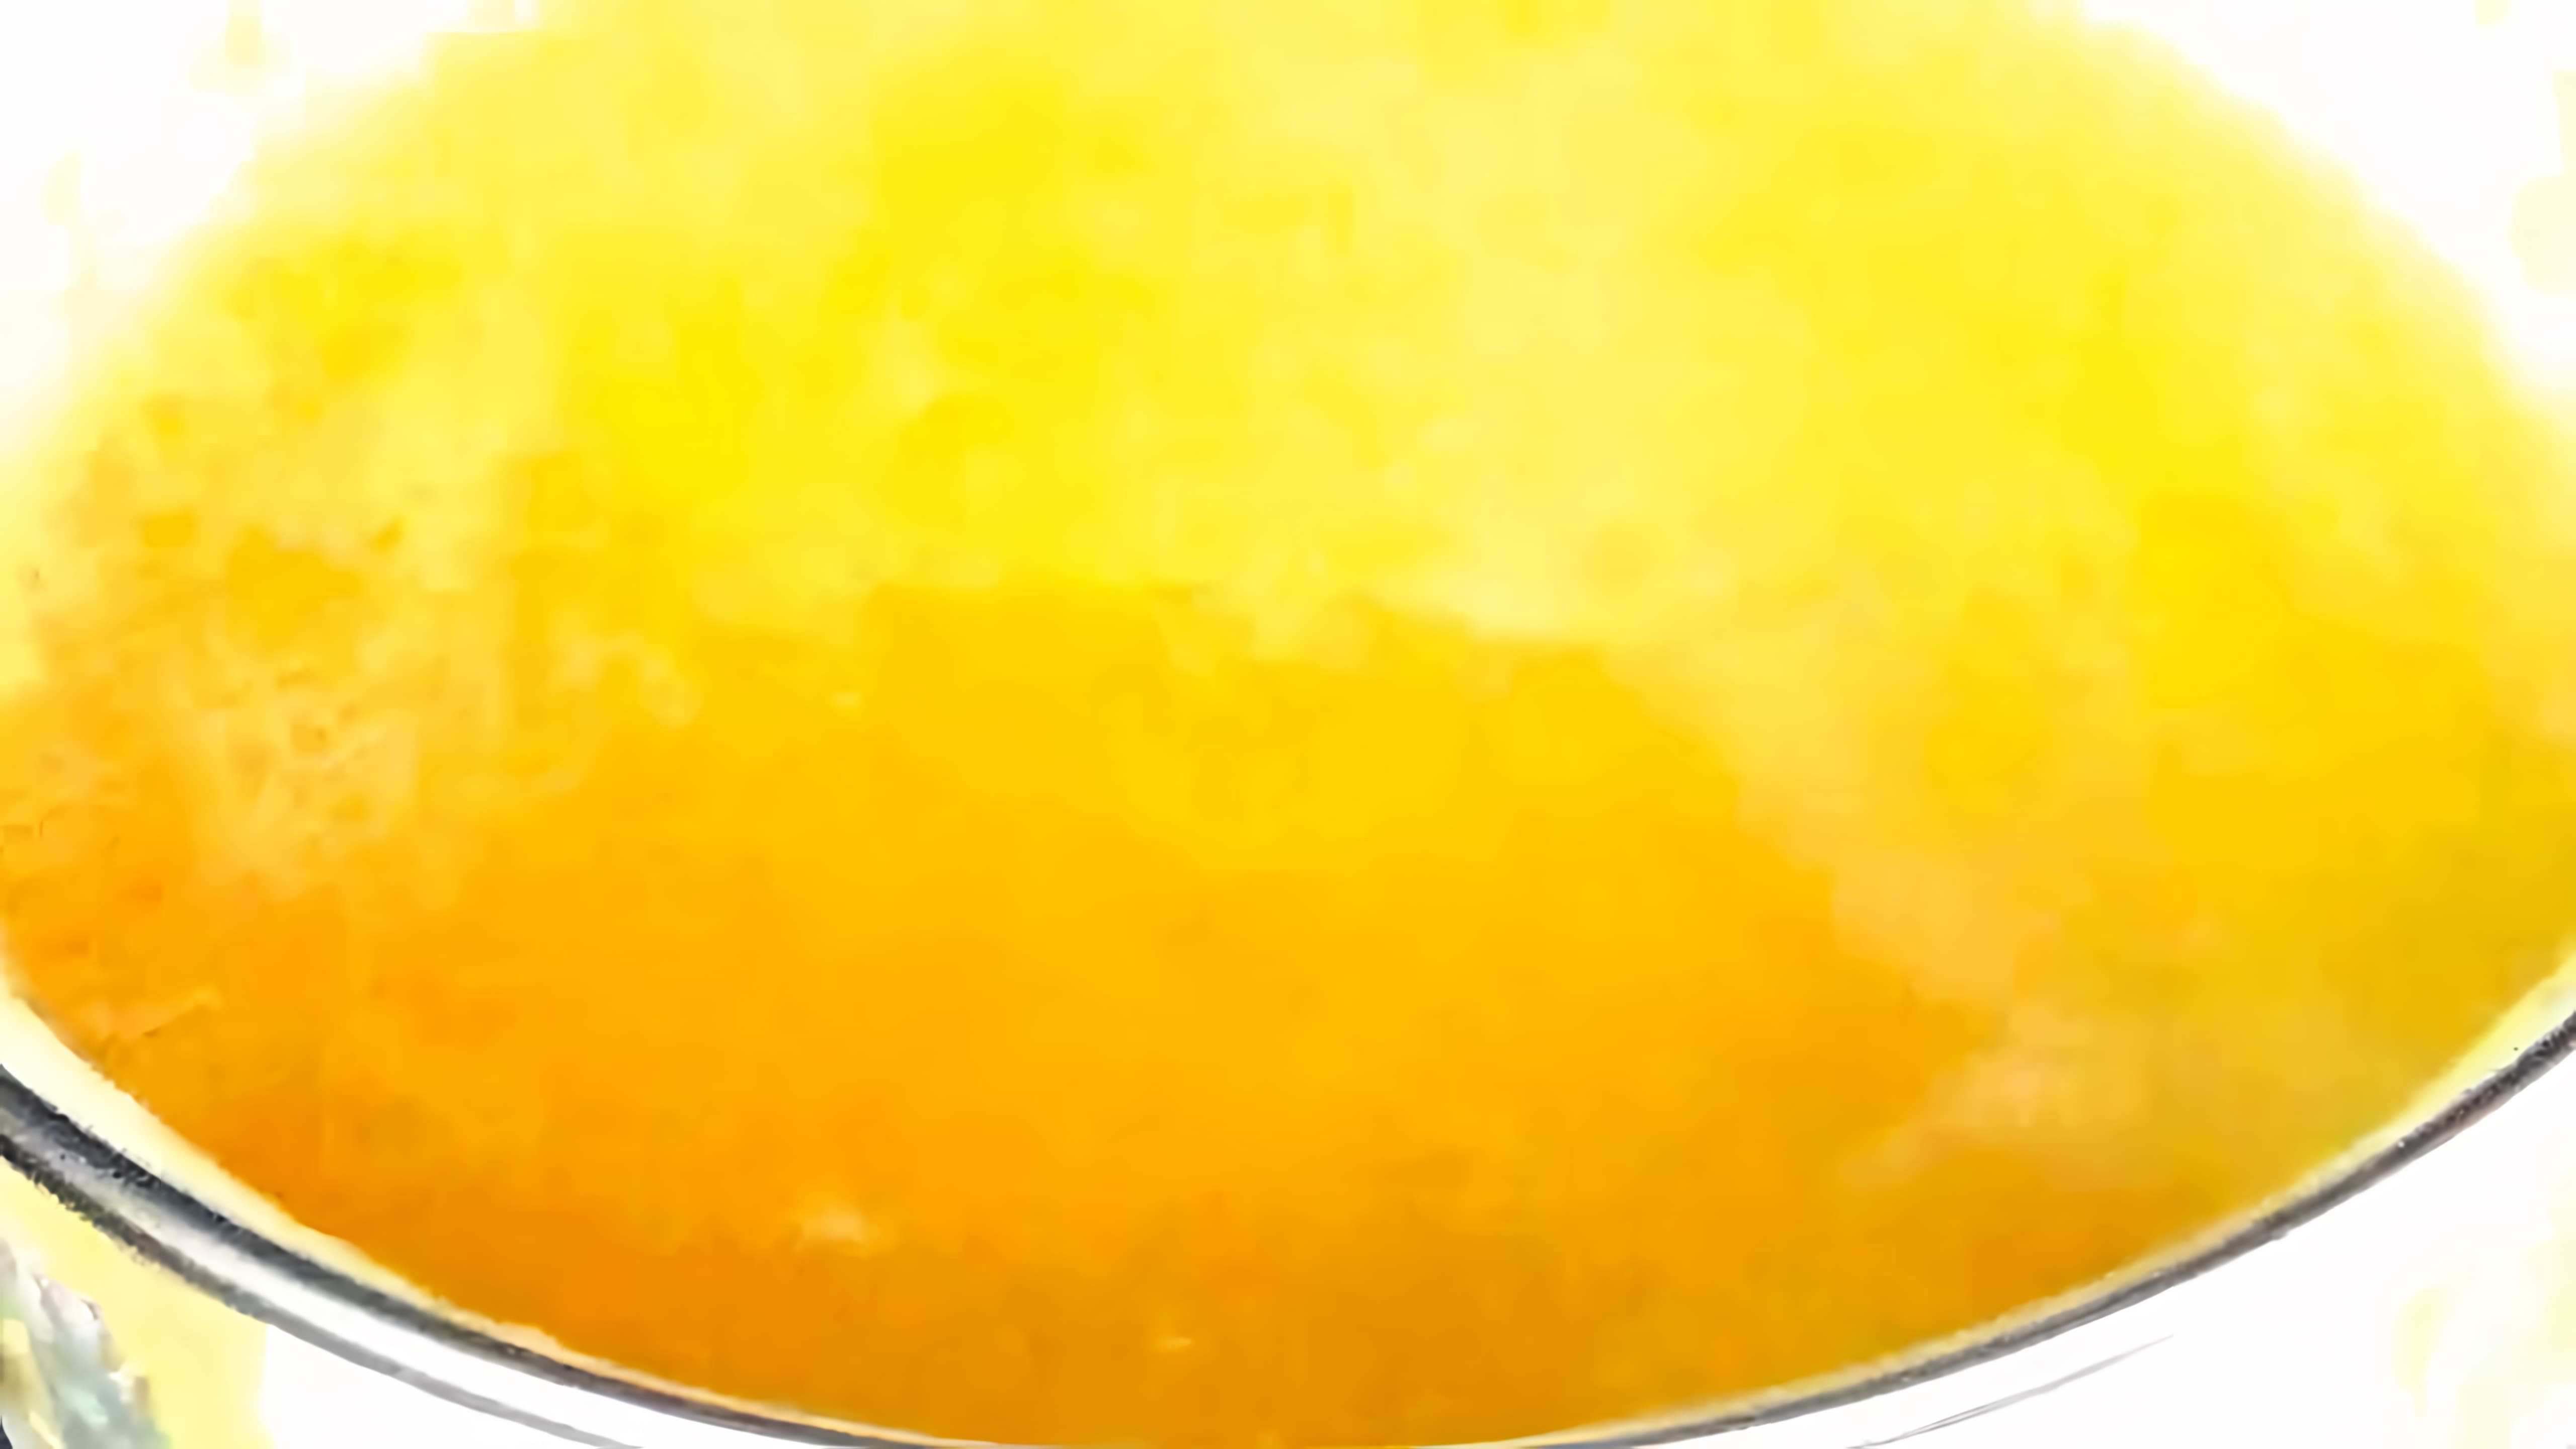 В этом видео демонстрируется рецепт приготовления вкусного сиропа из сока лимона и меда, который можно использовать для пропитки тортов и пирожных